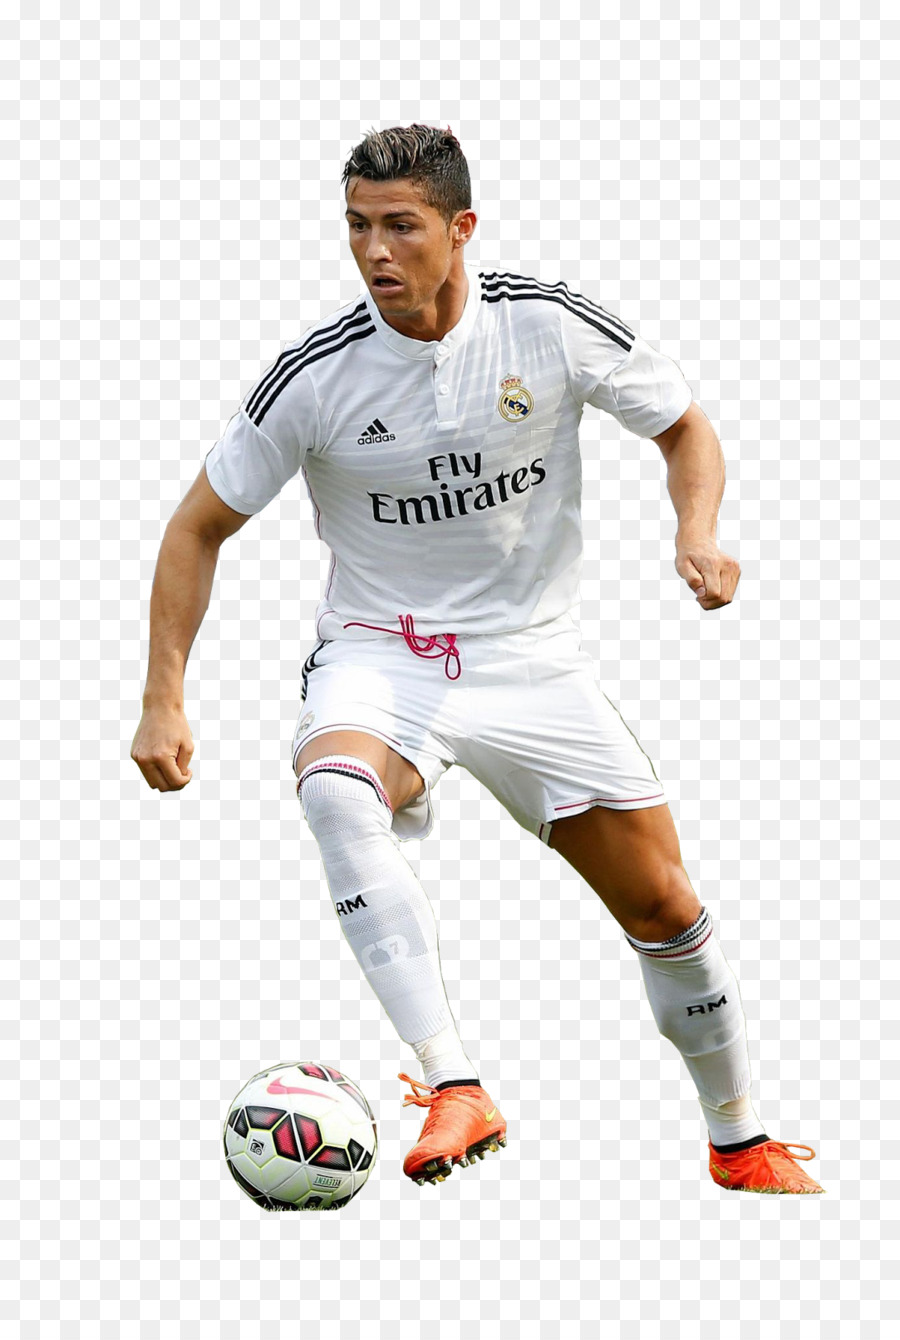 Cristiano Ronaldo del Real Madrid C. F. Manchester United F. C. in Portogallo nazionale di calcio FIFA 18 - Cristiano Ronaldo